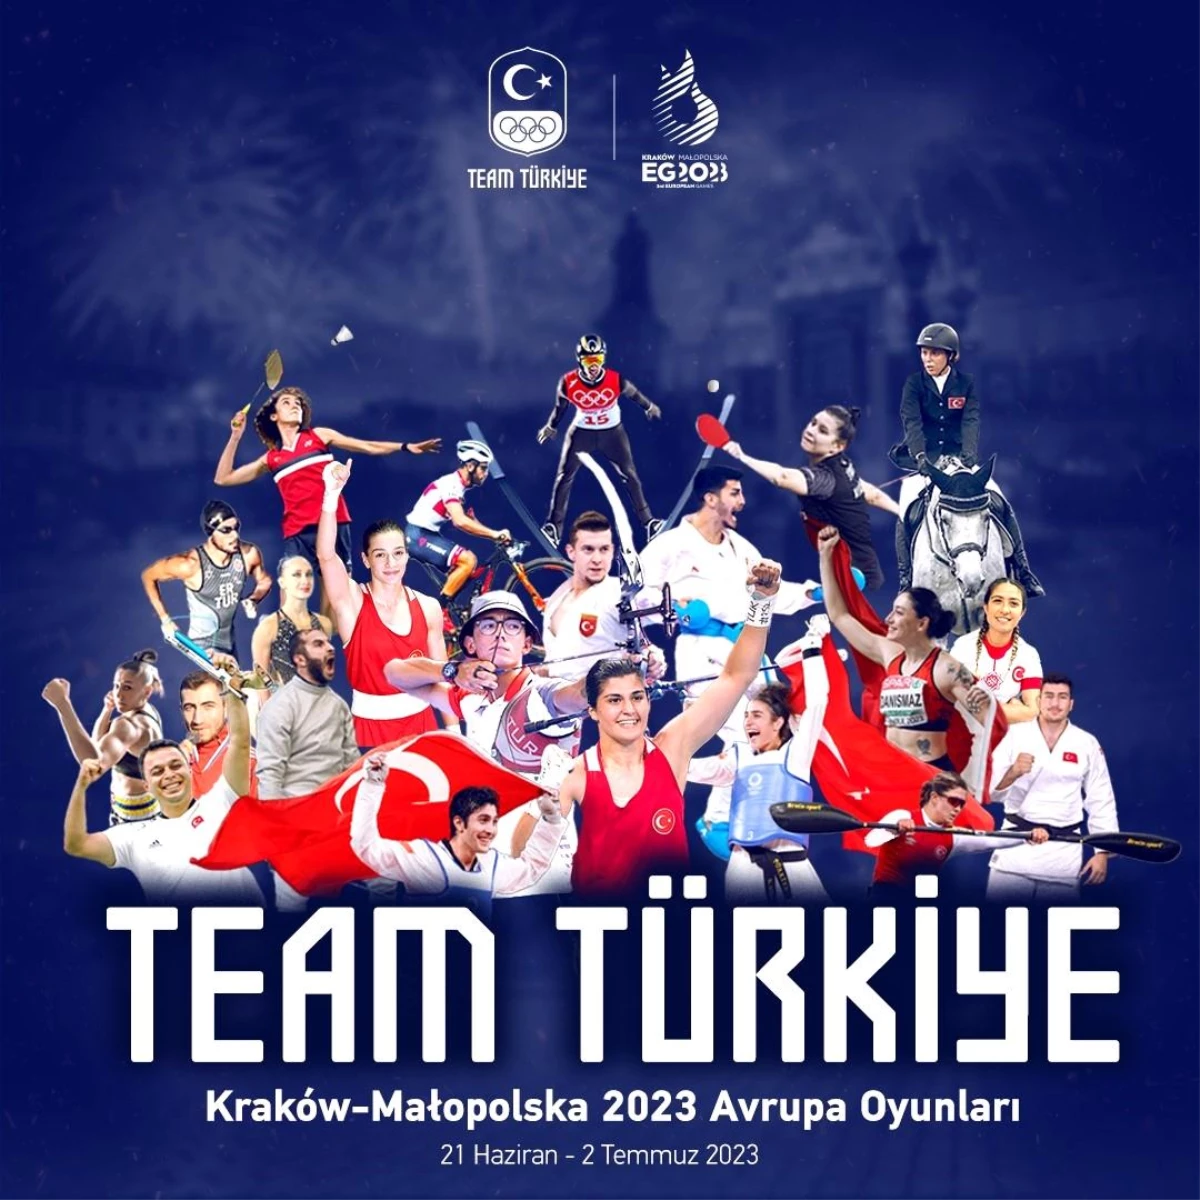 Team Turkey announced for 2023 European Games in Krakow-Malopolska